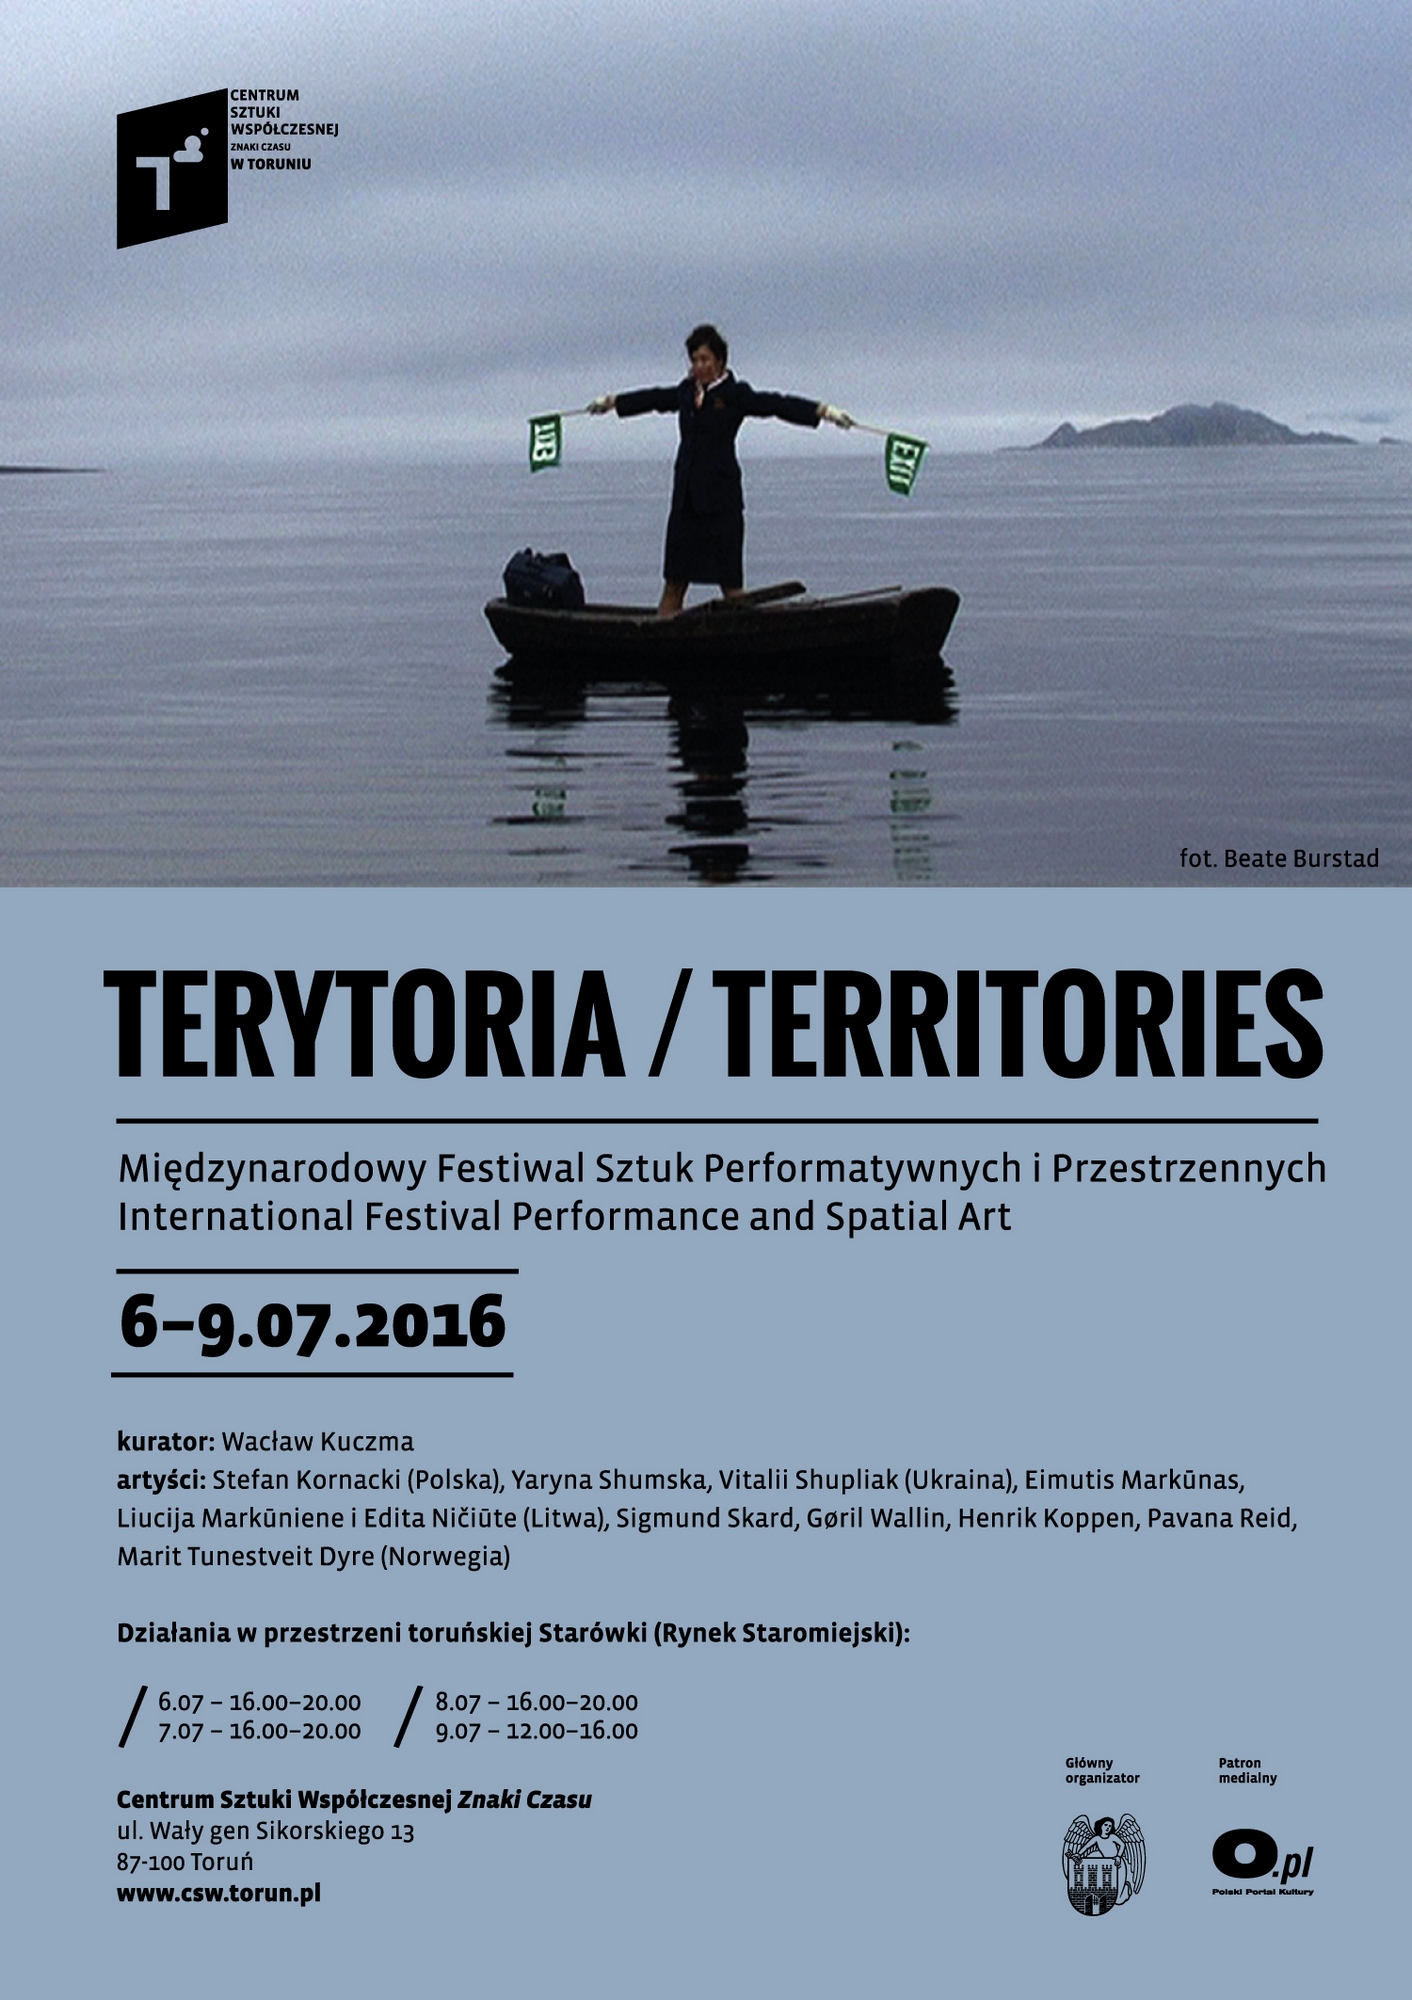 Międzynarodowy Festiwal Sztuk Performatywnych i Przestrzennych Terytoria/Territories – plakat (źródło: materiały prasowe organizatora)